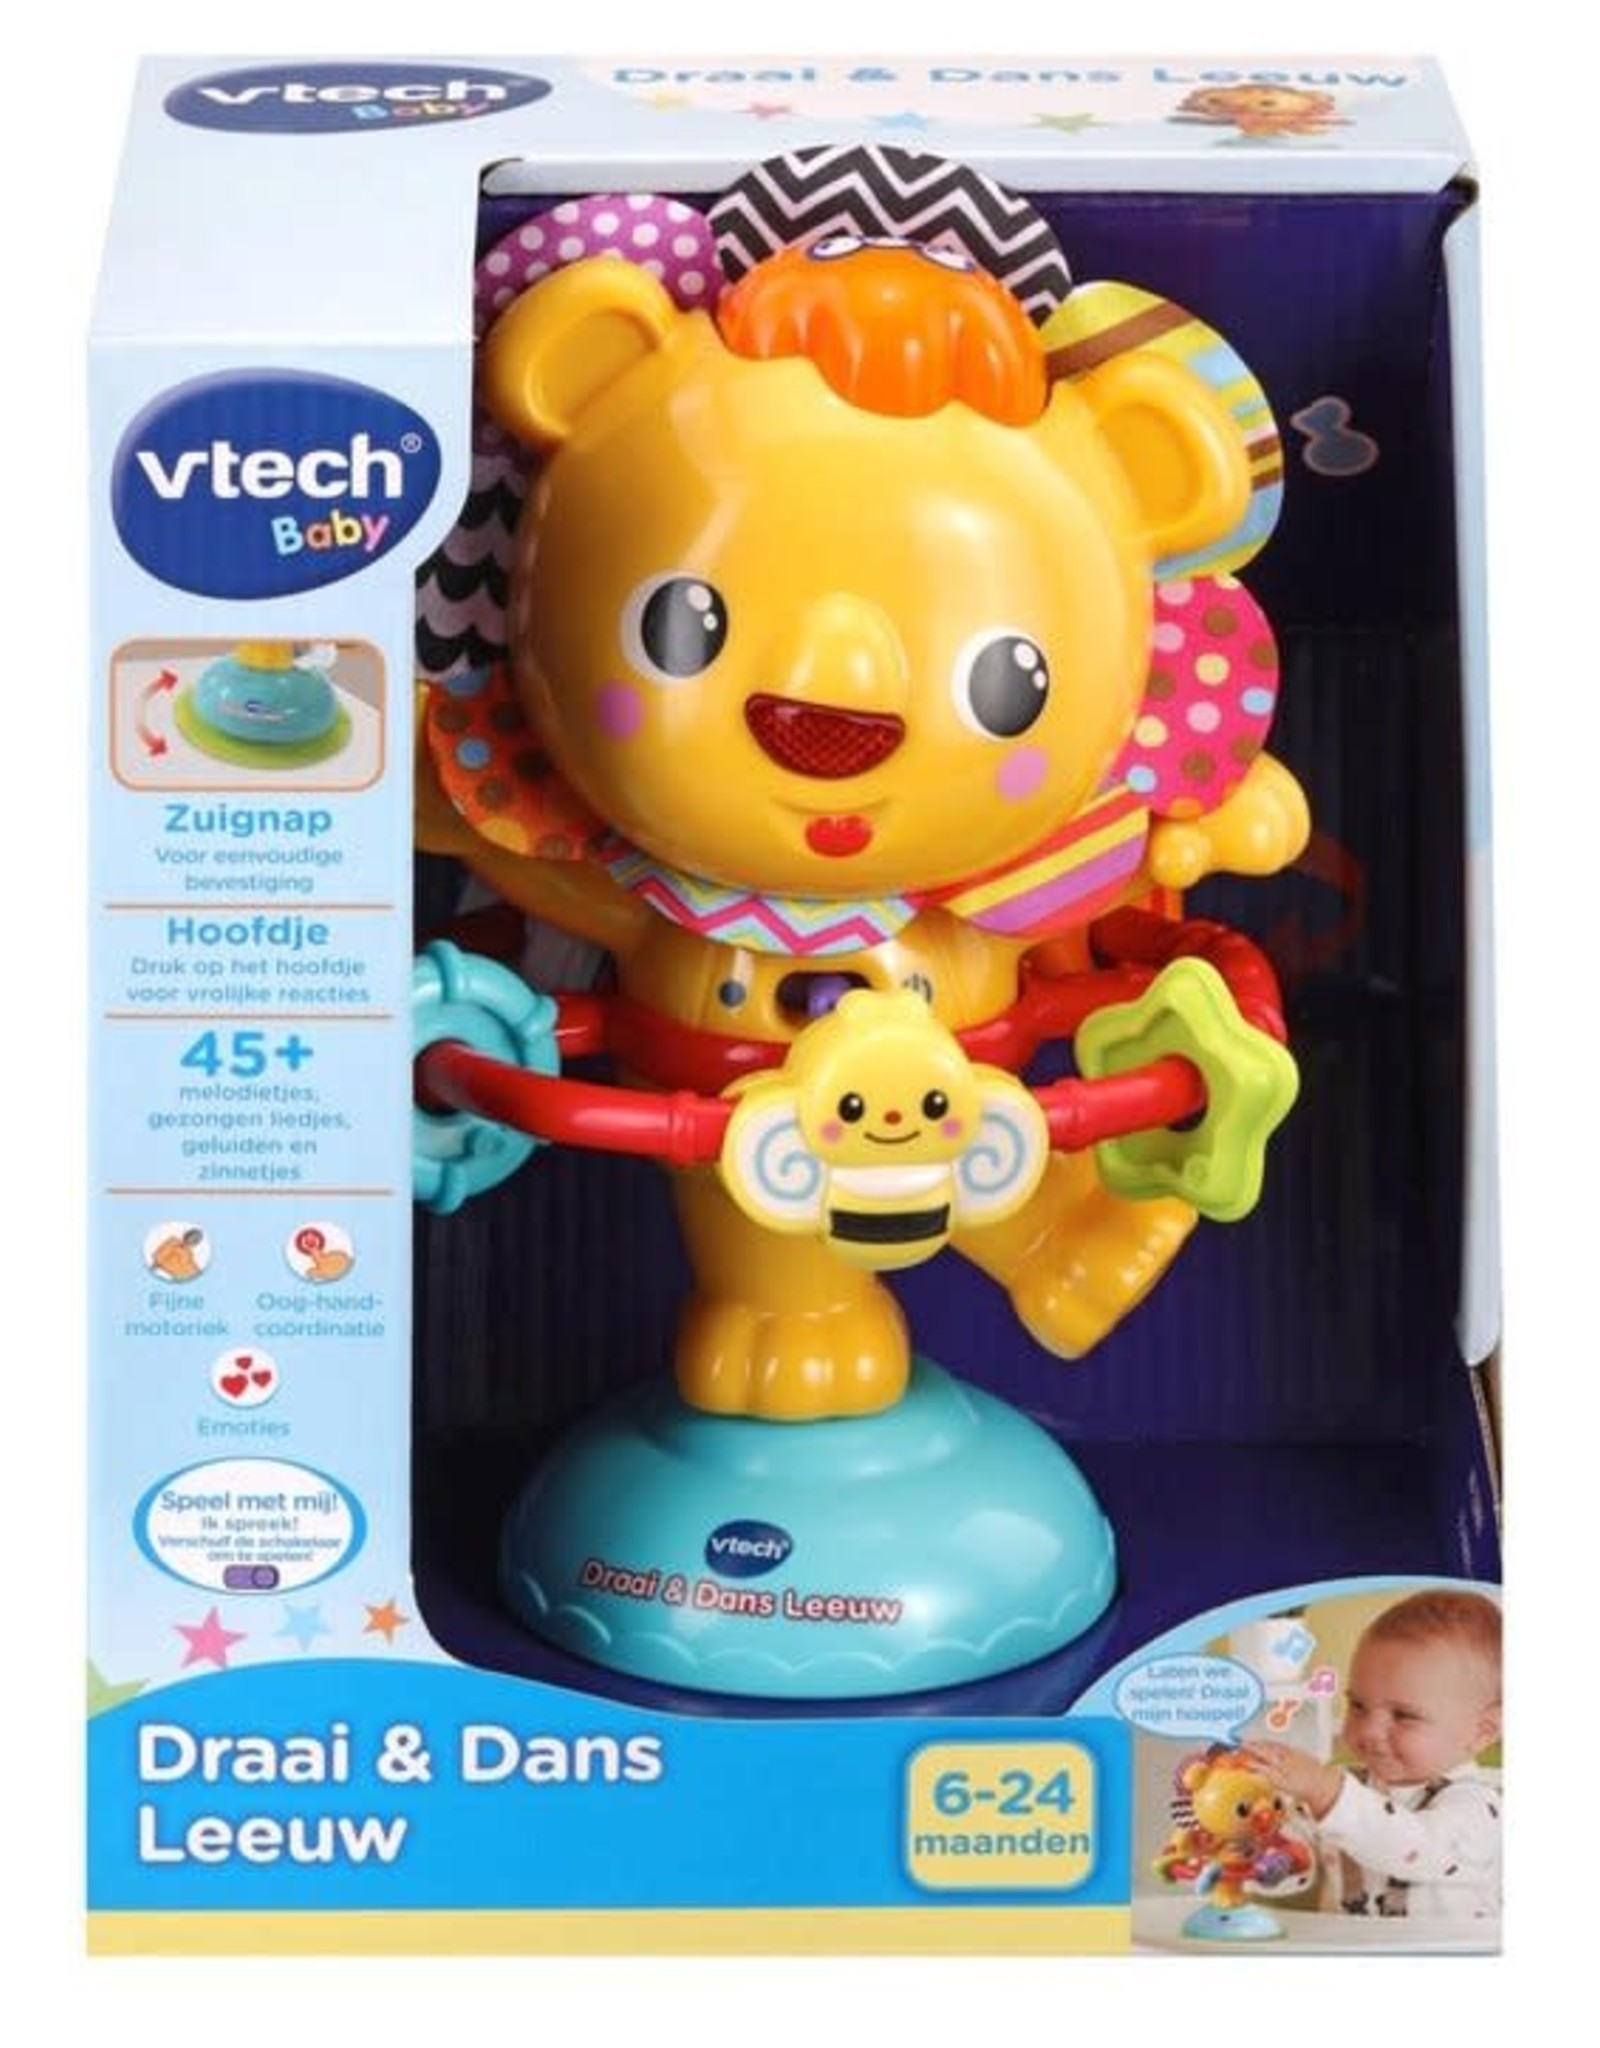 Ochtend Haan puzzel VTECH VTech Baby Draai & Dans Leeuw - H-BLOK & TOYS